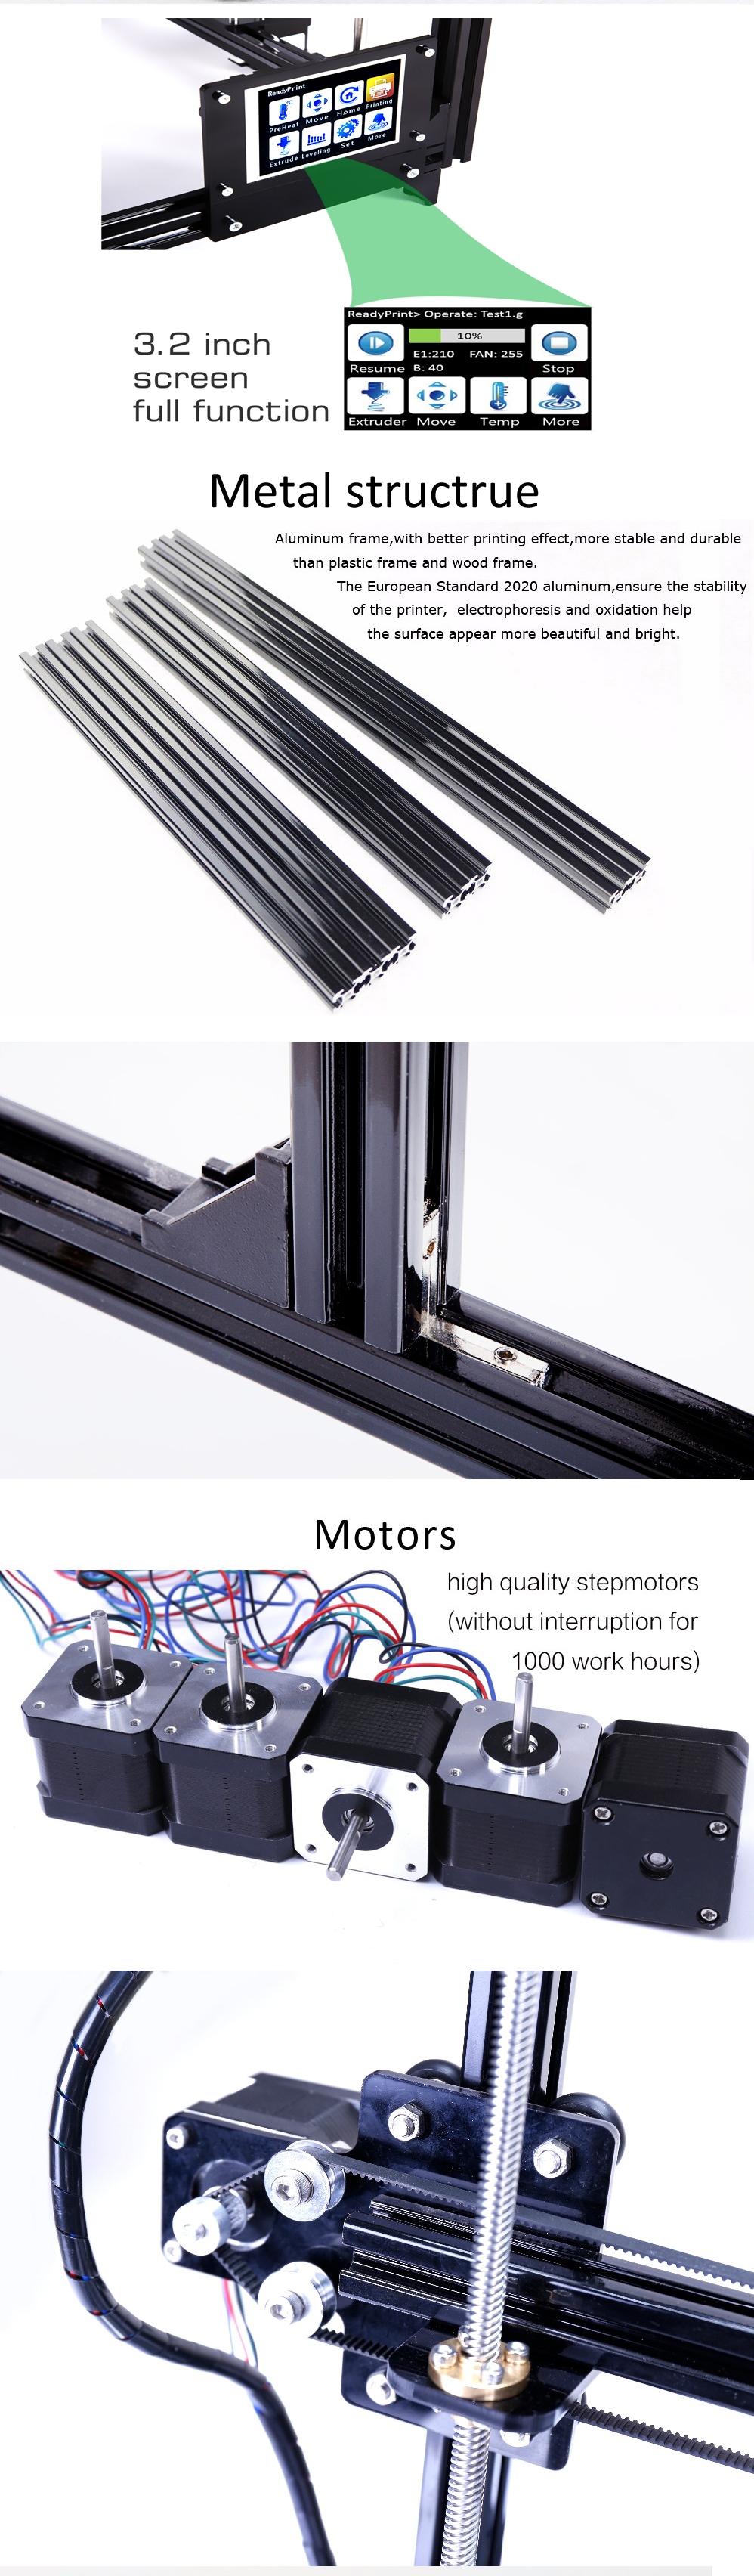 FLSUN® C Plus Desktop DIY 3D Printer With Touch Screen Dual Nozzle Auto Leveling Double Z-motors Support Flexible Filament 300*300*420mm Printing Size 15